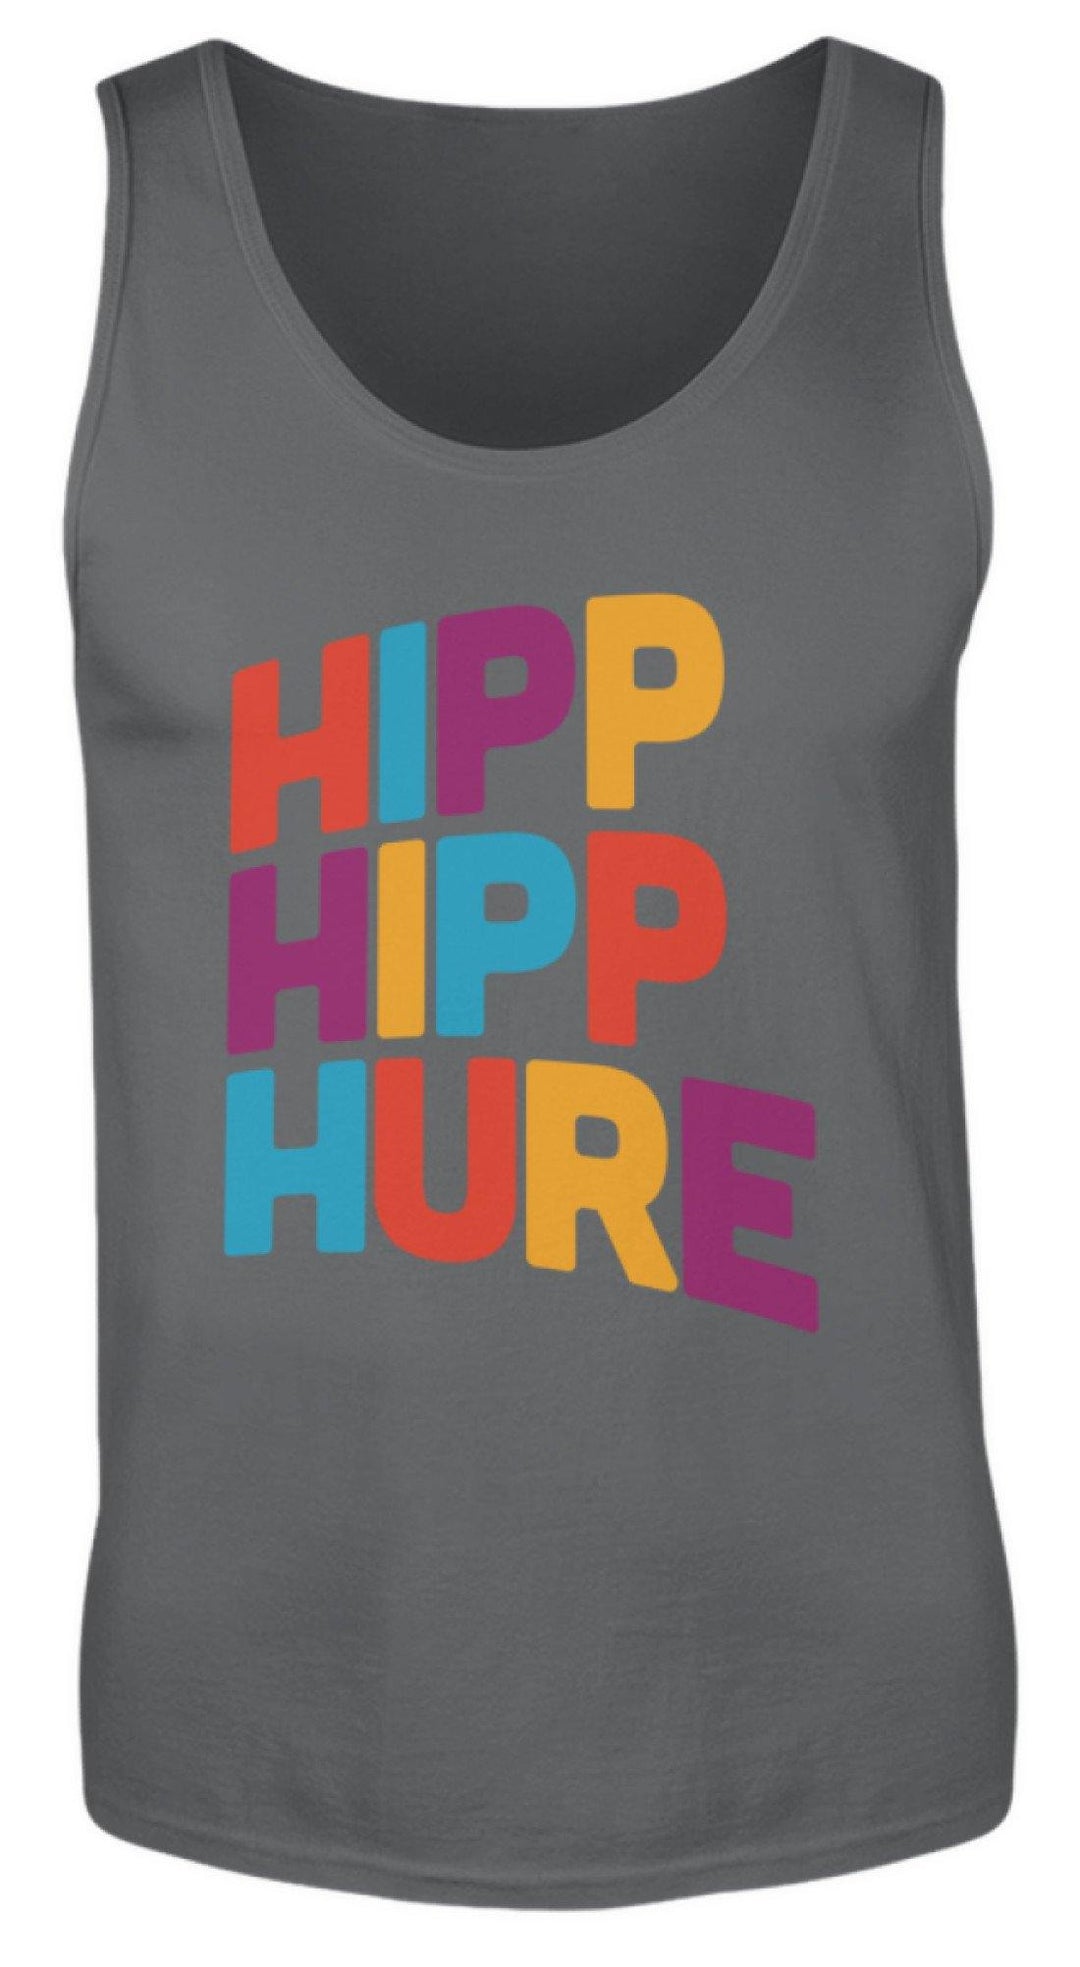 Hipp Hipp Hure- Words on Shirts  - Herren Tanktop - Words on Shirts Sag es mit dem Mittelfinger Shirts Hoodies Sweatshirt Taschen Gymsack Spruch Sprüche Statement